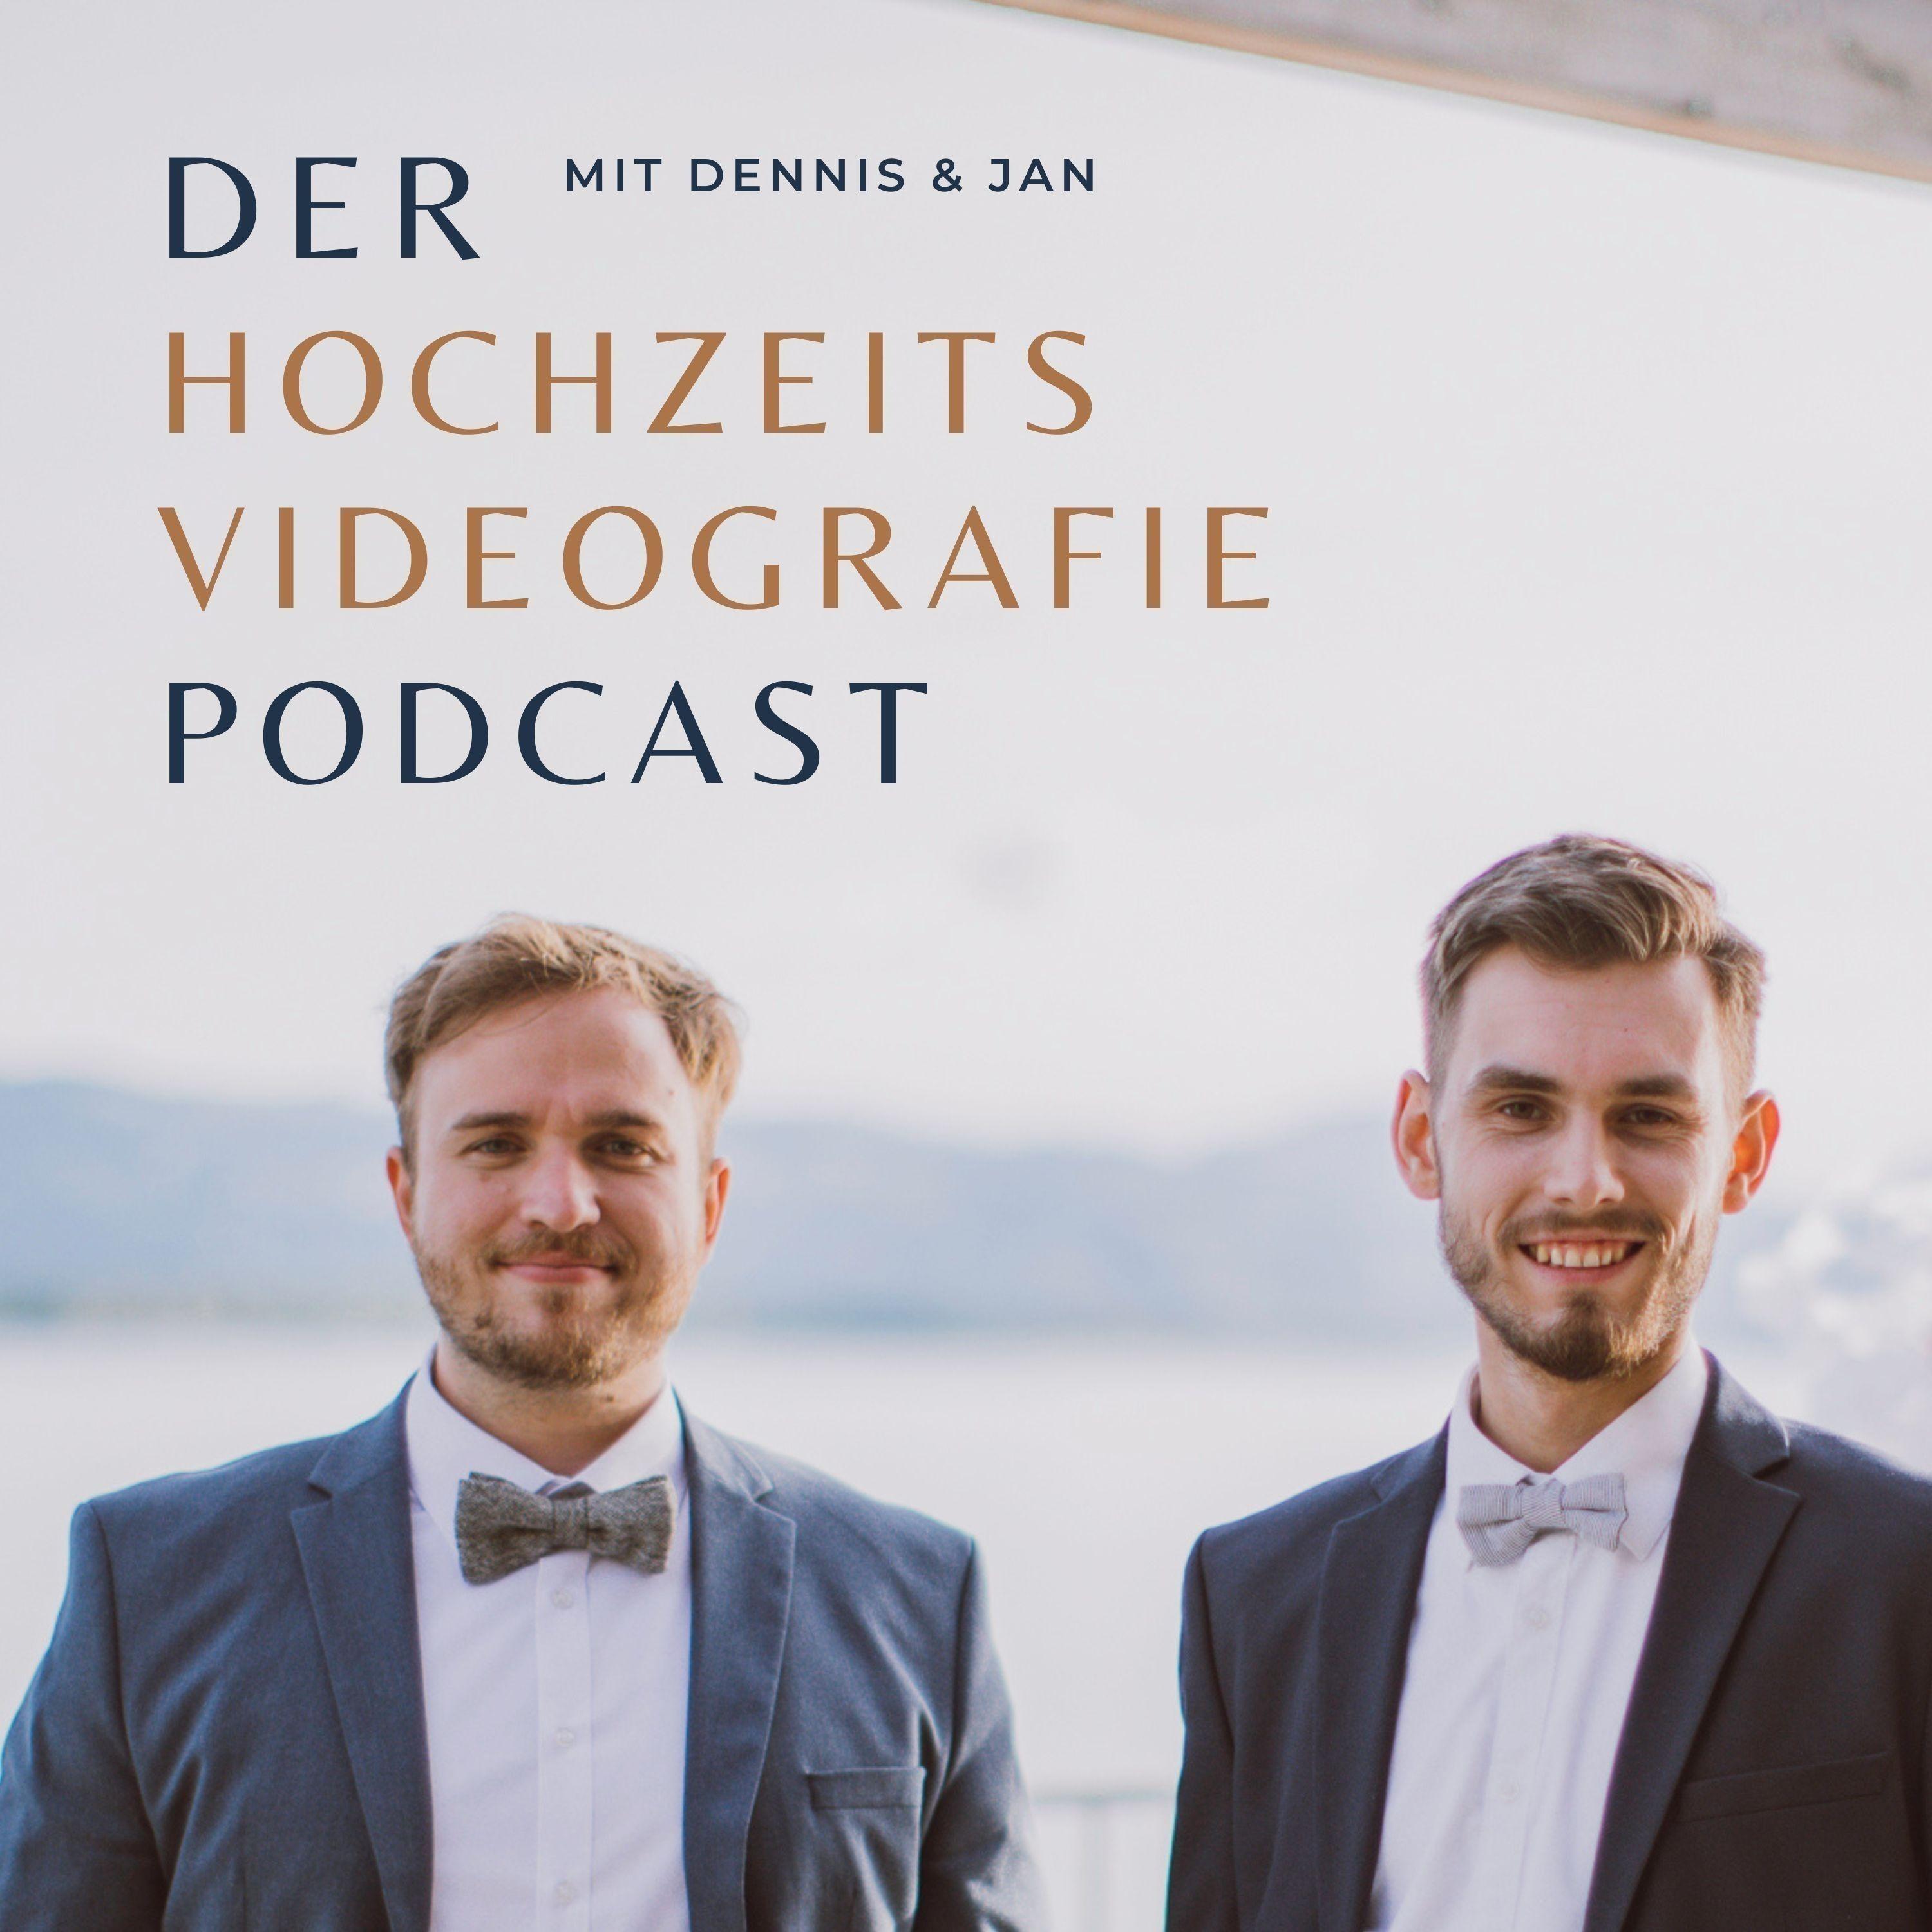 Der Hochzeitsvideografie Podcast